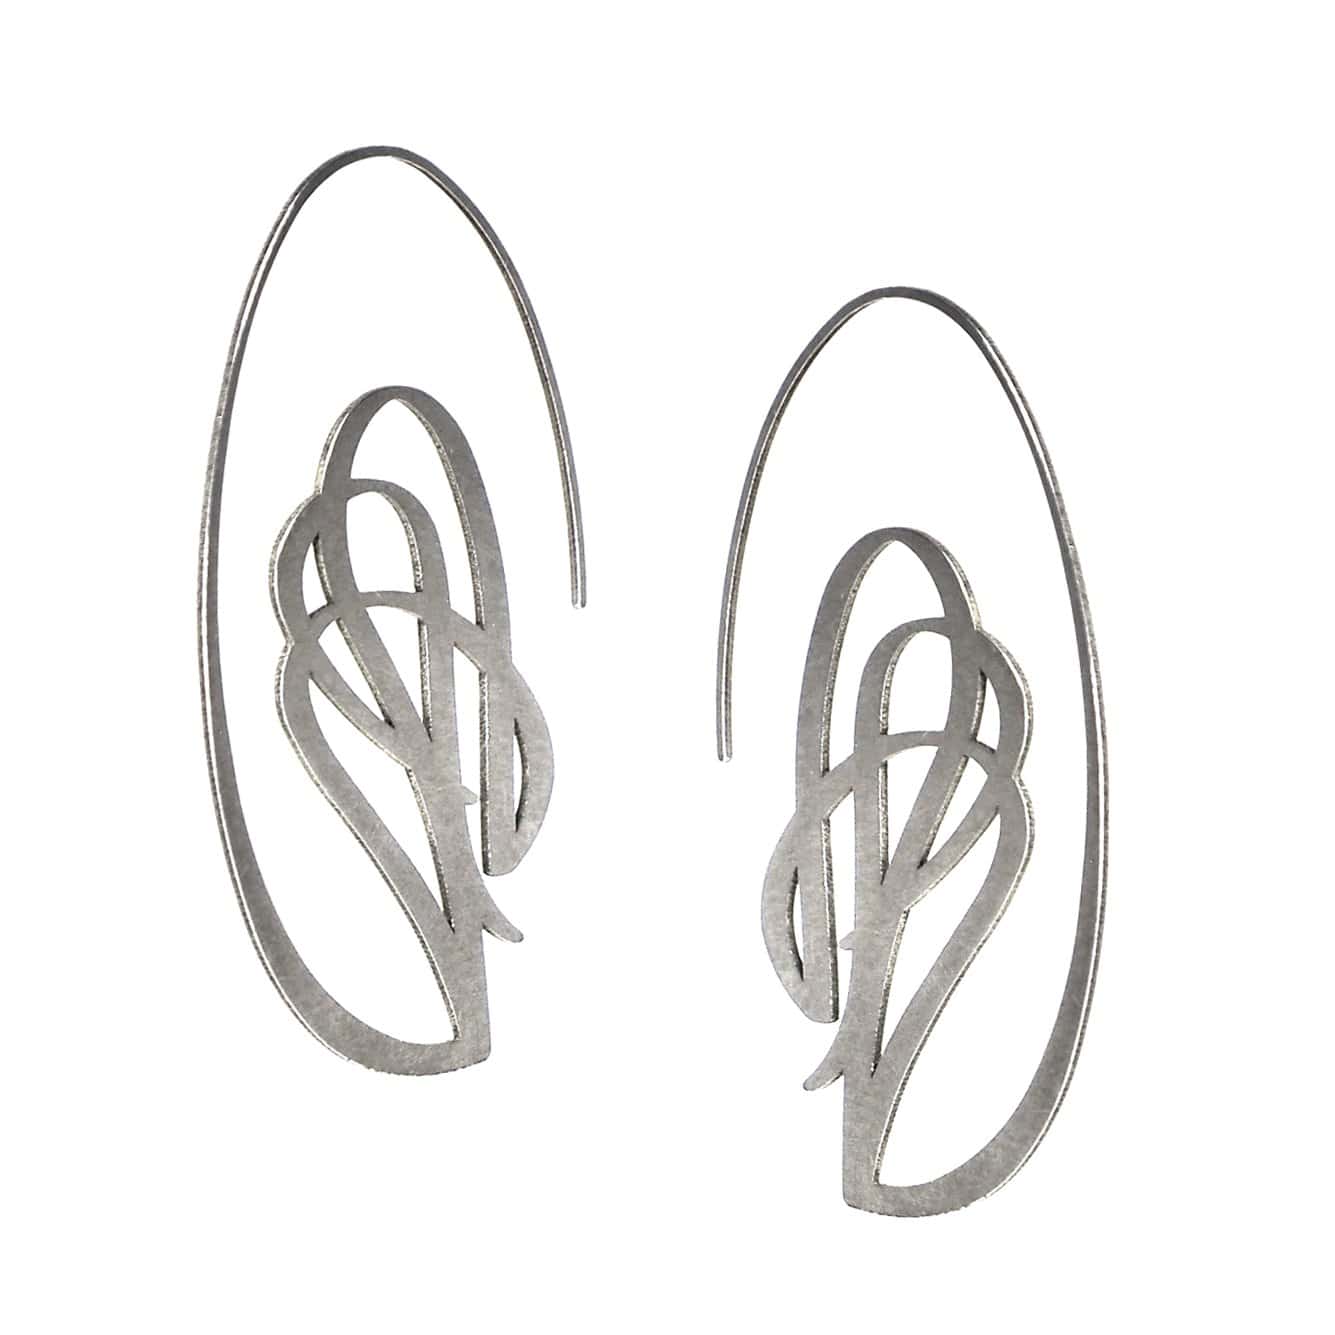 Swag Hoop Earrings - Raw Stainless Steel - inSync design